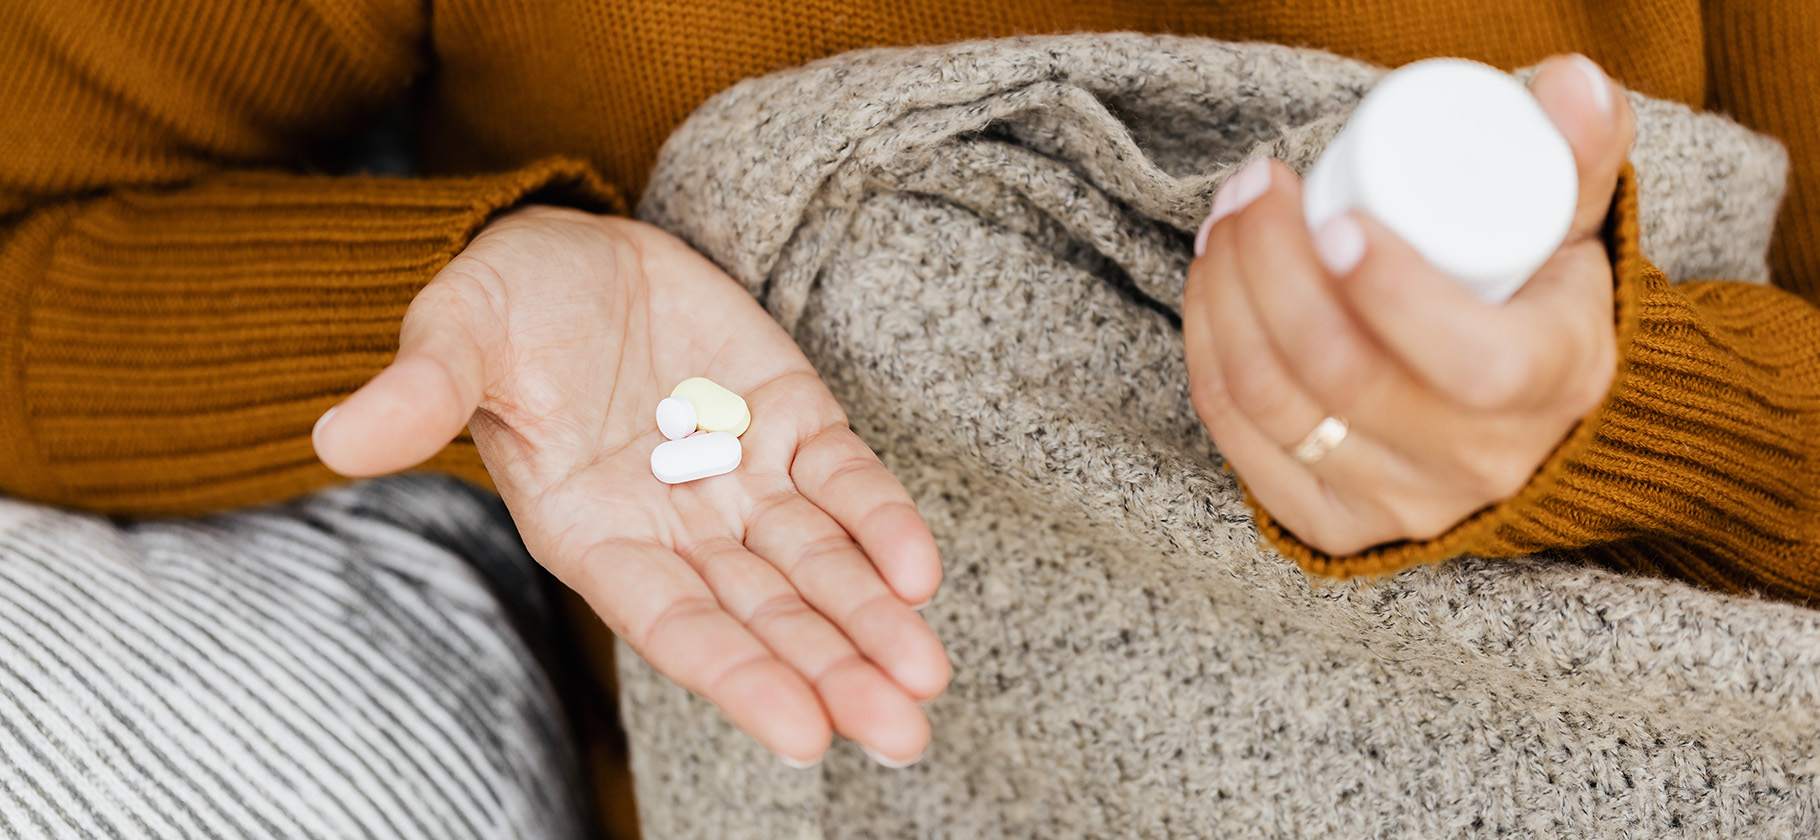 10 фактов, которые стоит знать перед приемом антидепрессантов